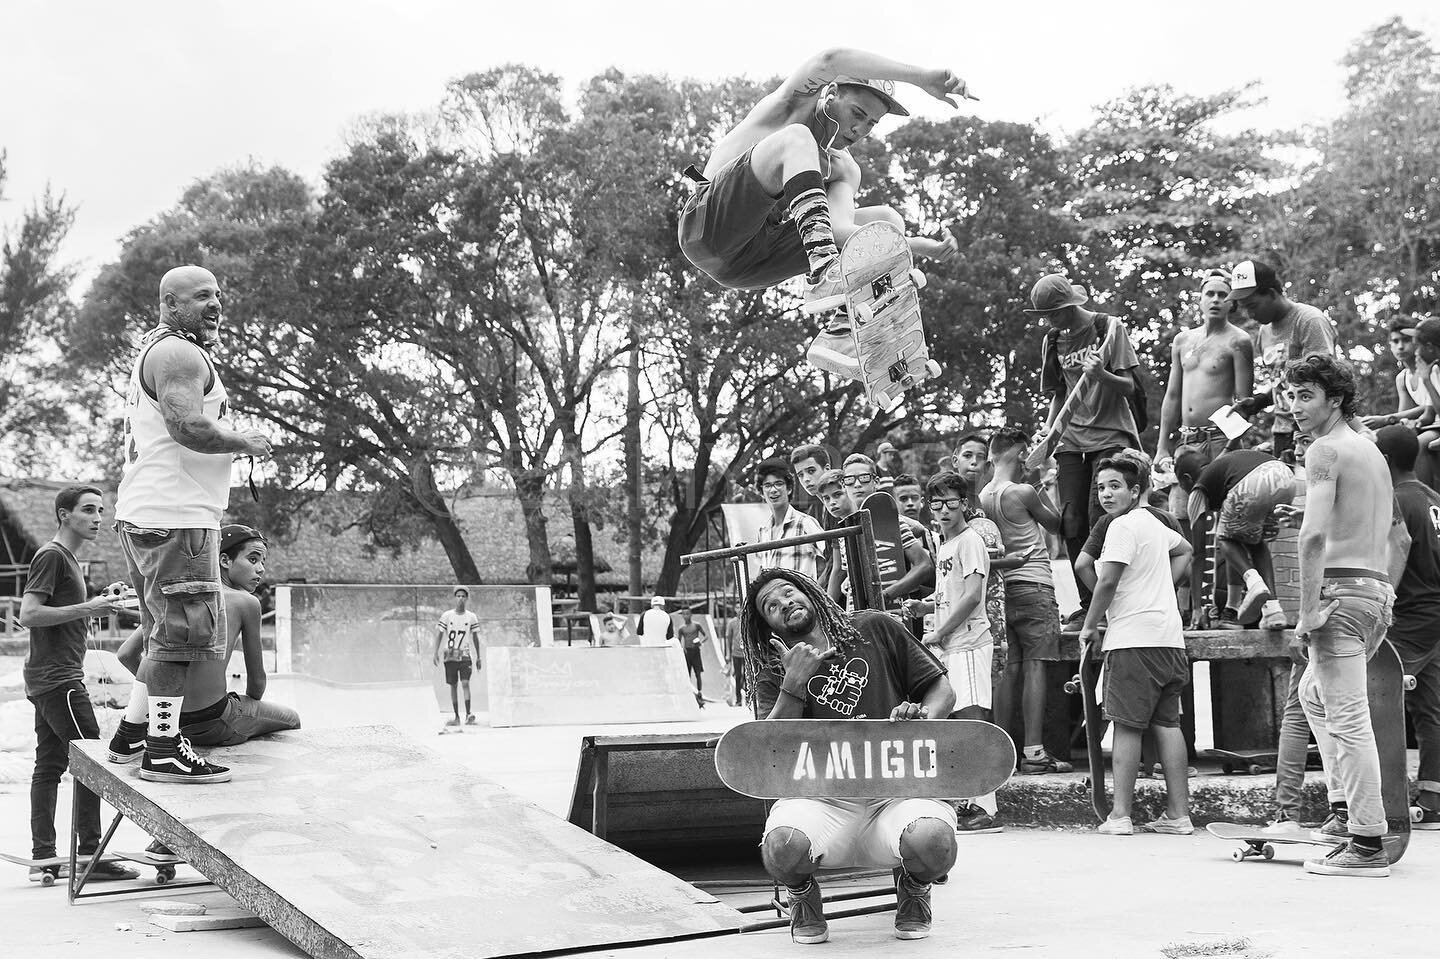 El golpe avisa!
.
.
.
.
.
.
.
.
.
.
Foto: @otrodios 
#amigos😍 #skateserveexplore #lahabana #cuba #skateboarders #somospocosperolocos #skatebording #missionstrip #hastasiempre